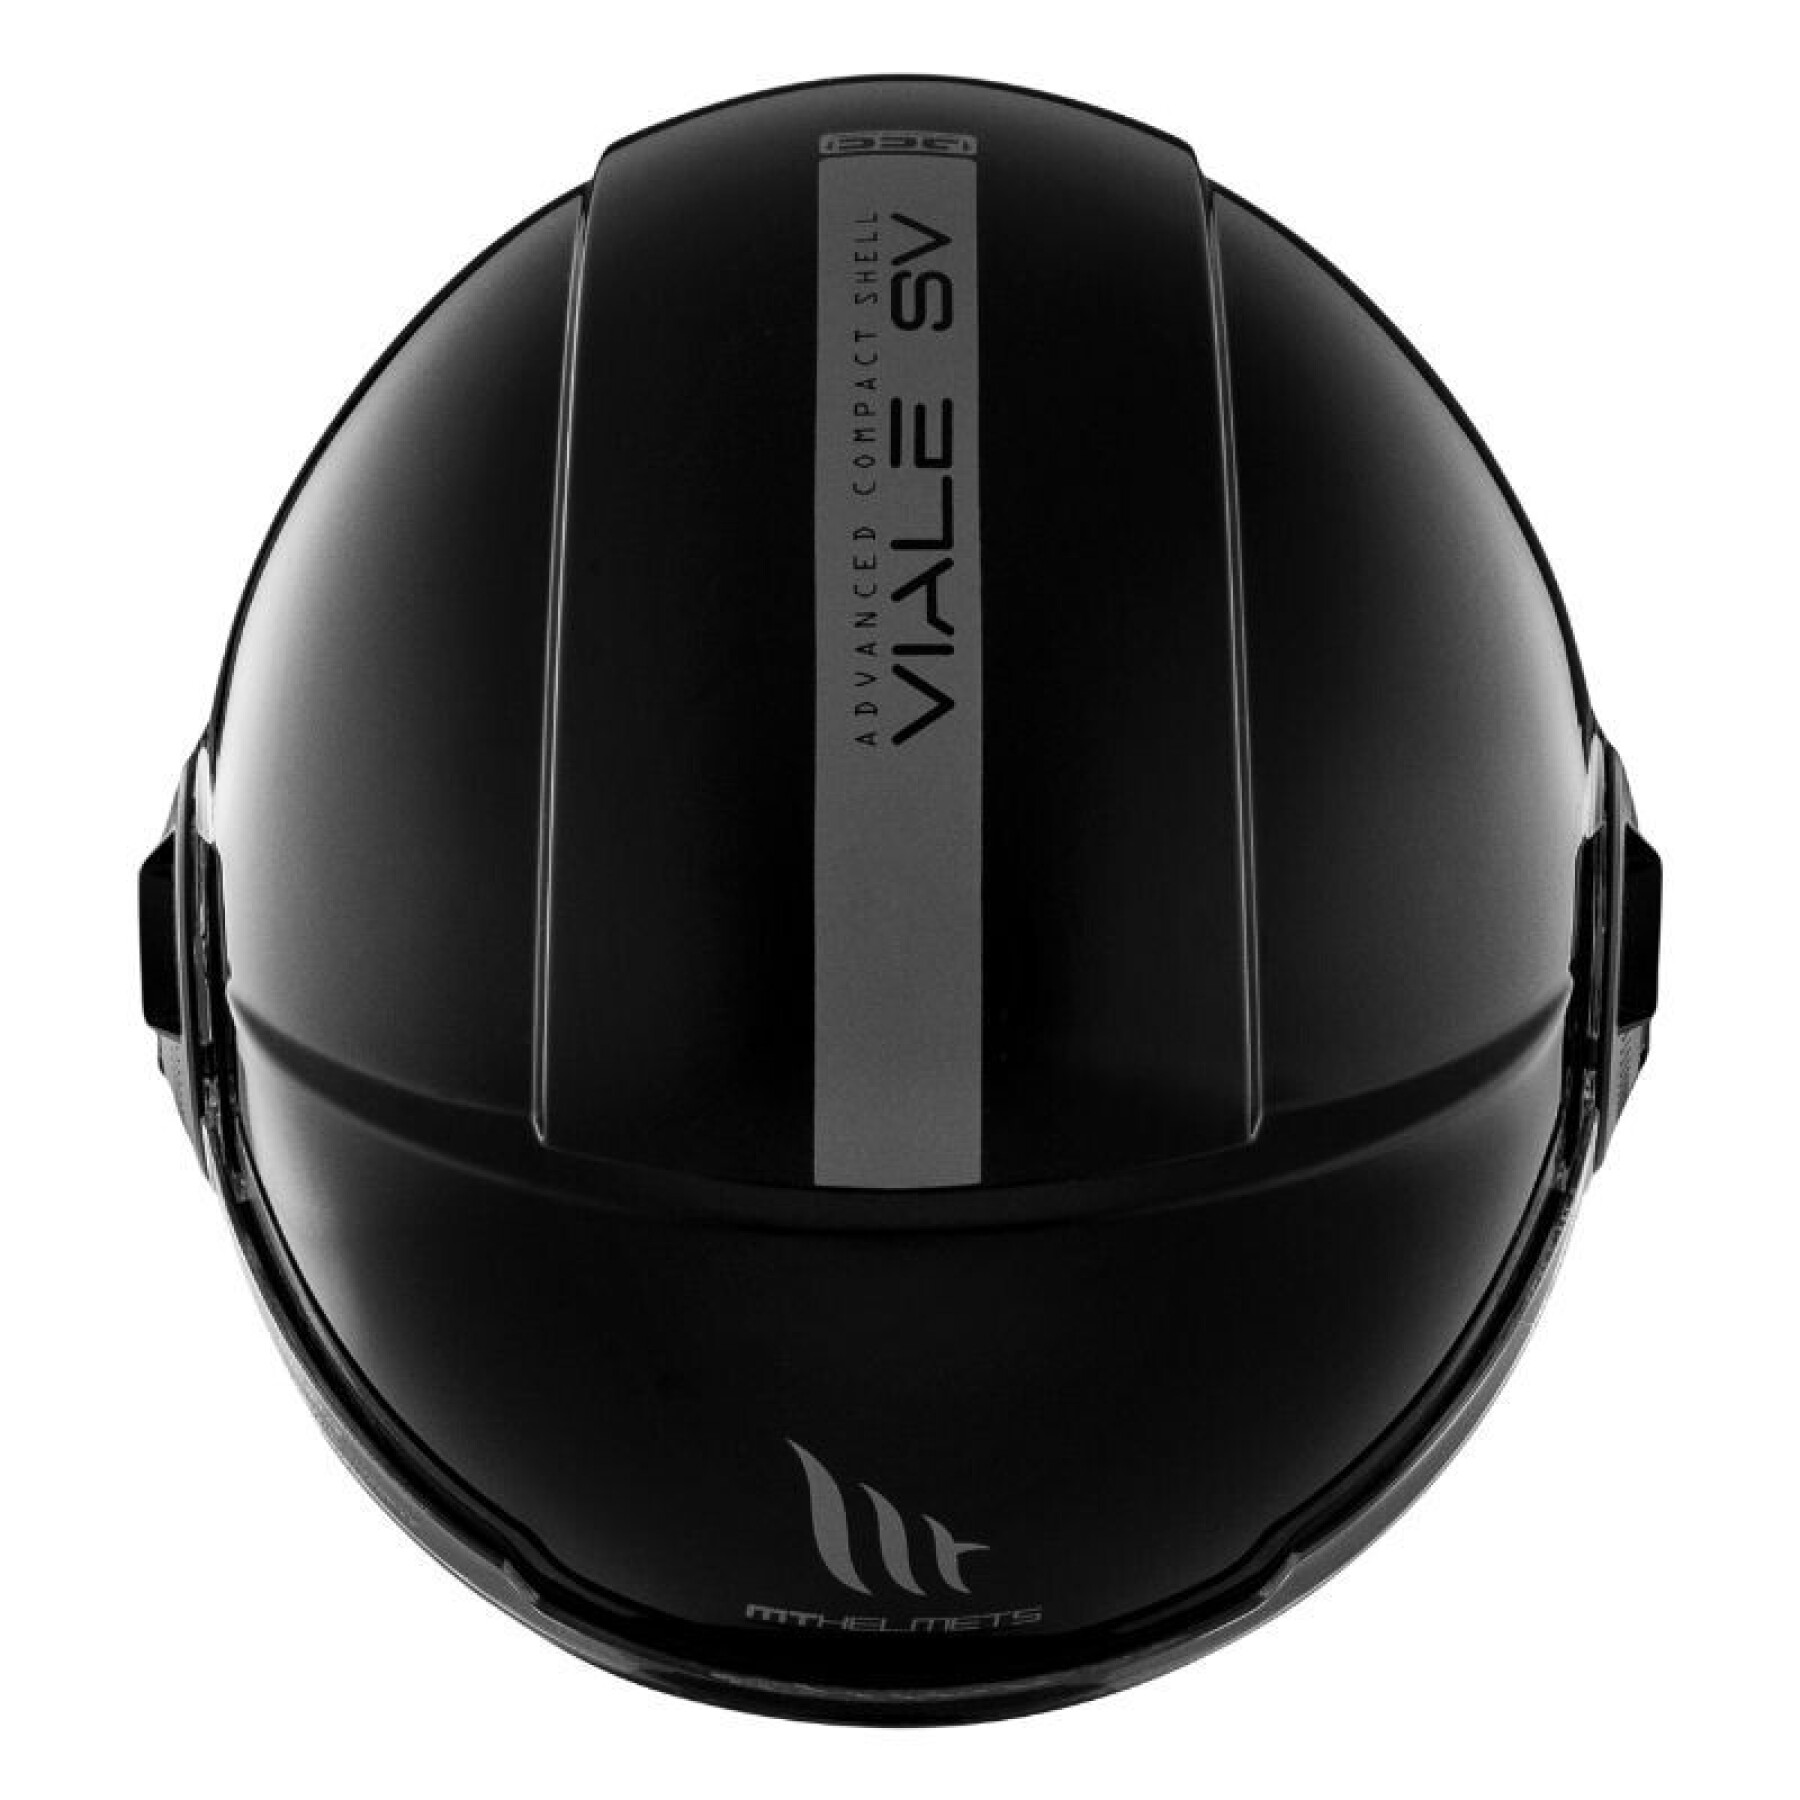 Jet-Helm mit zwei Bildschirmen MT Helmets Viale SV